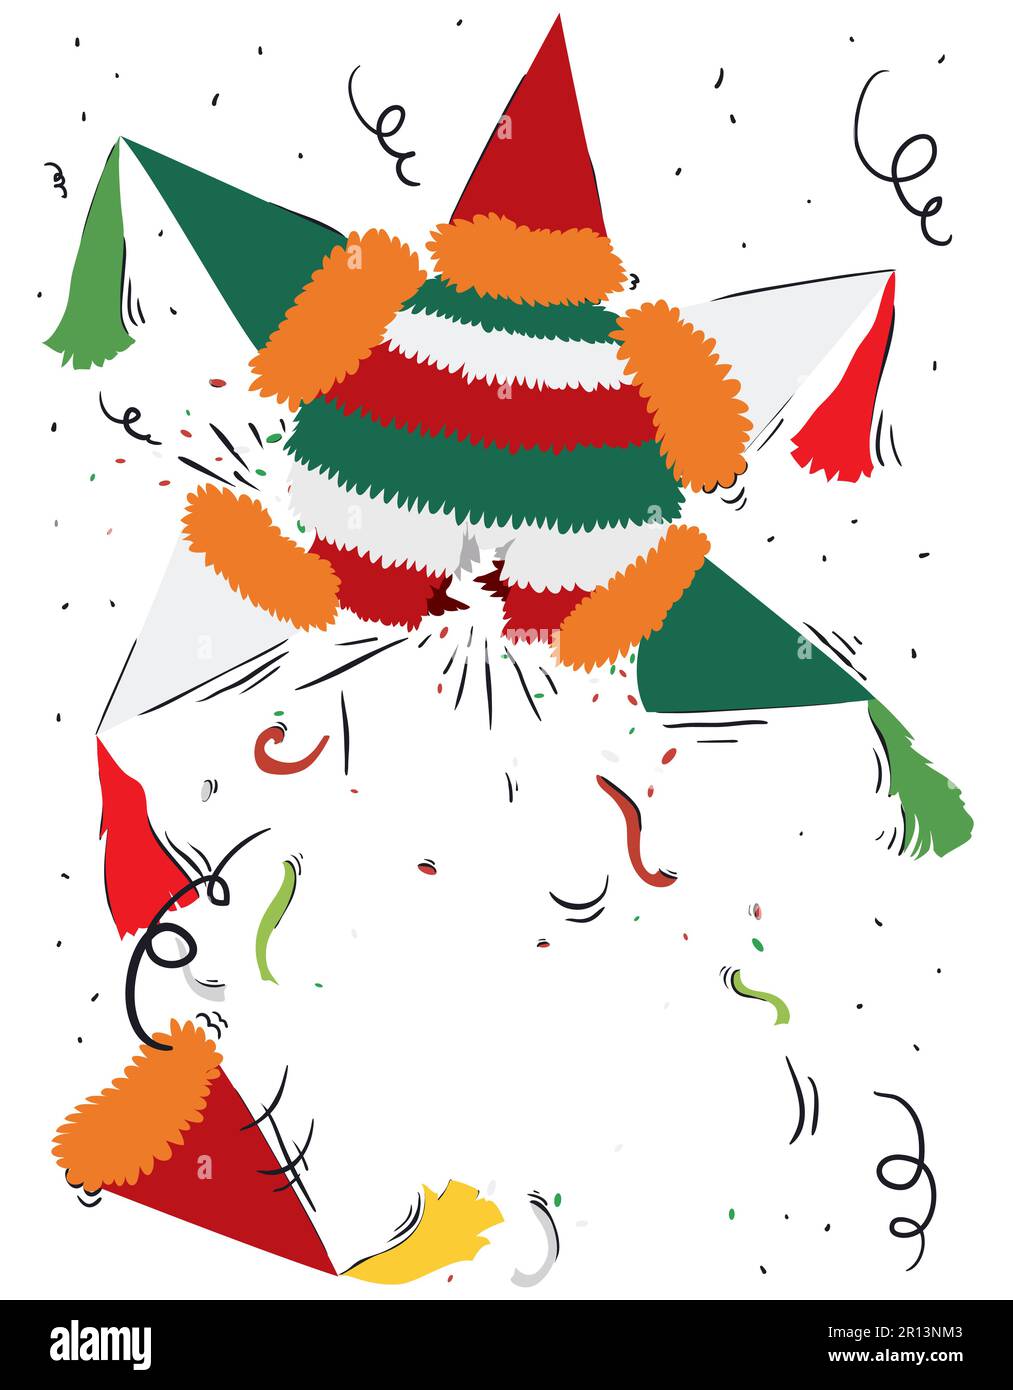 Scena festosa di una pinata rotta ad una festa con confetti e streamers. Design in colori piatti e doodles. Illustrazione Vettoriale